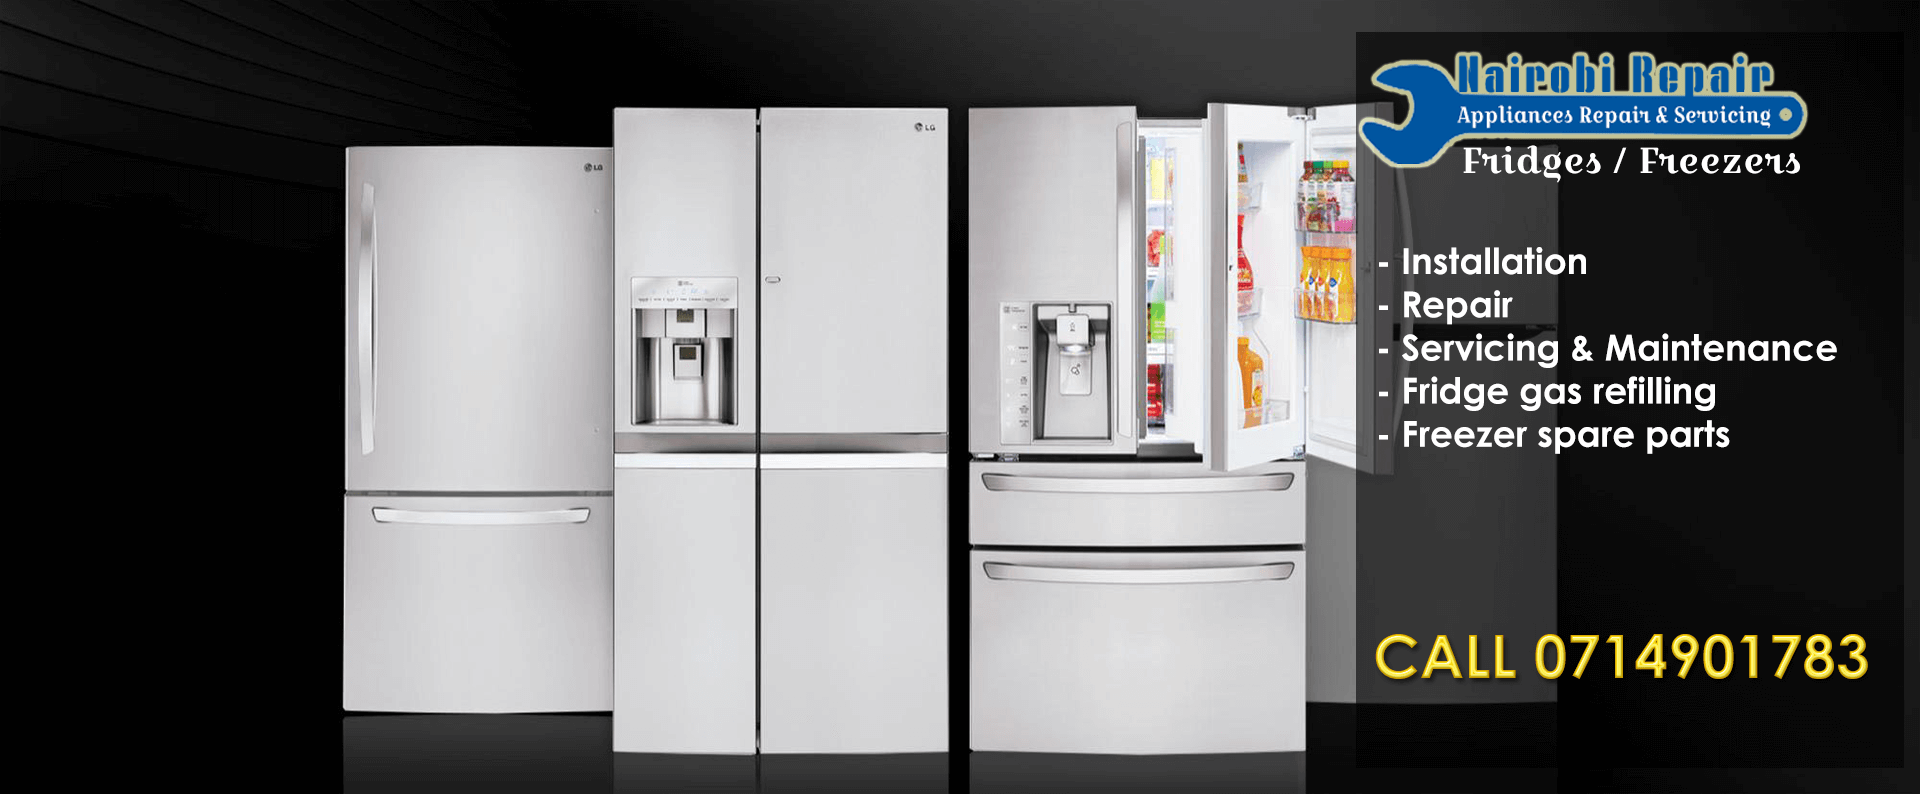 Cooling appliance repair - refrigerator repair